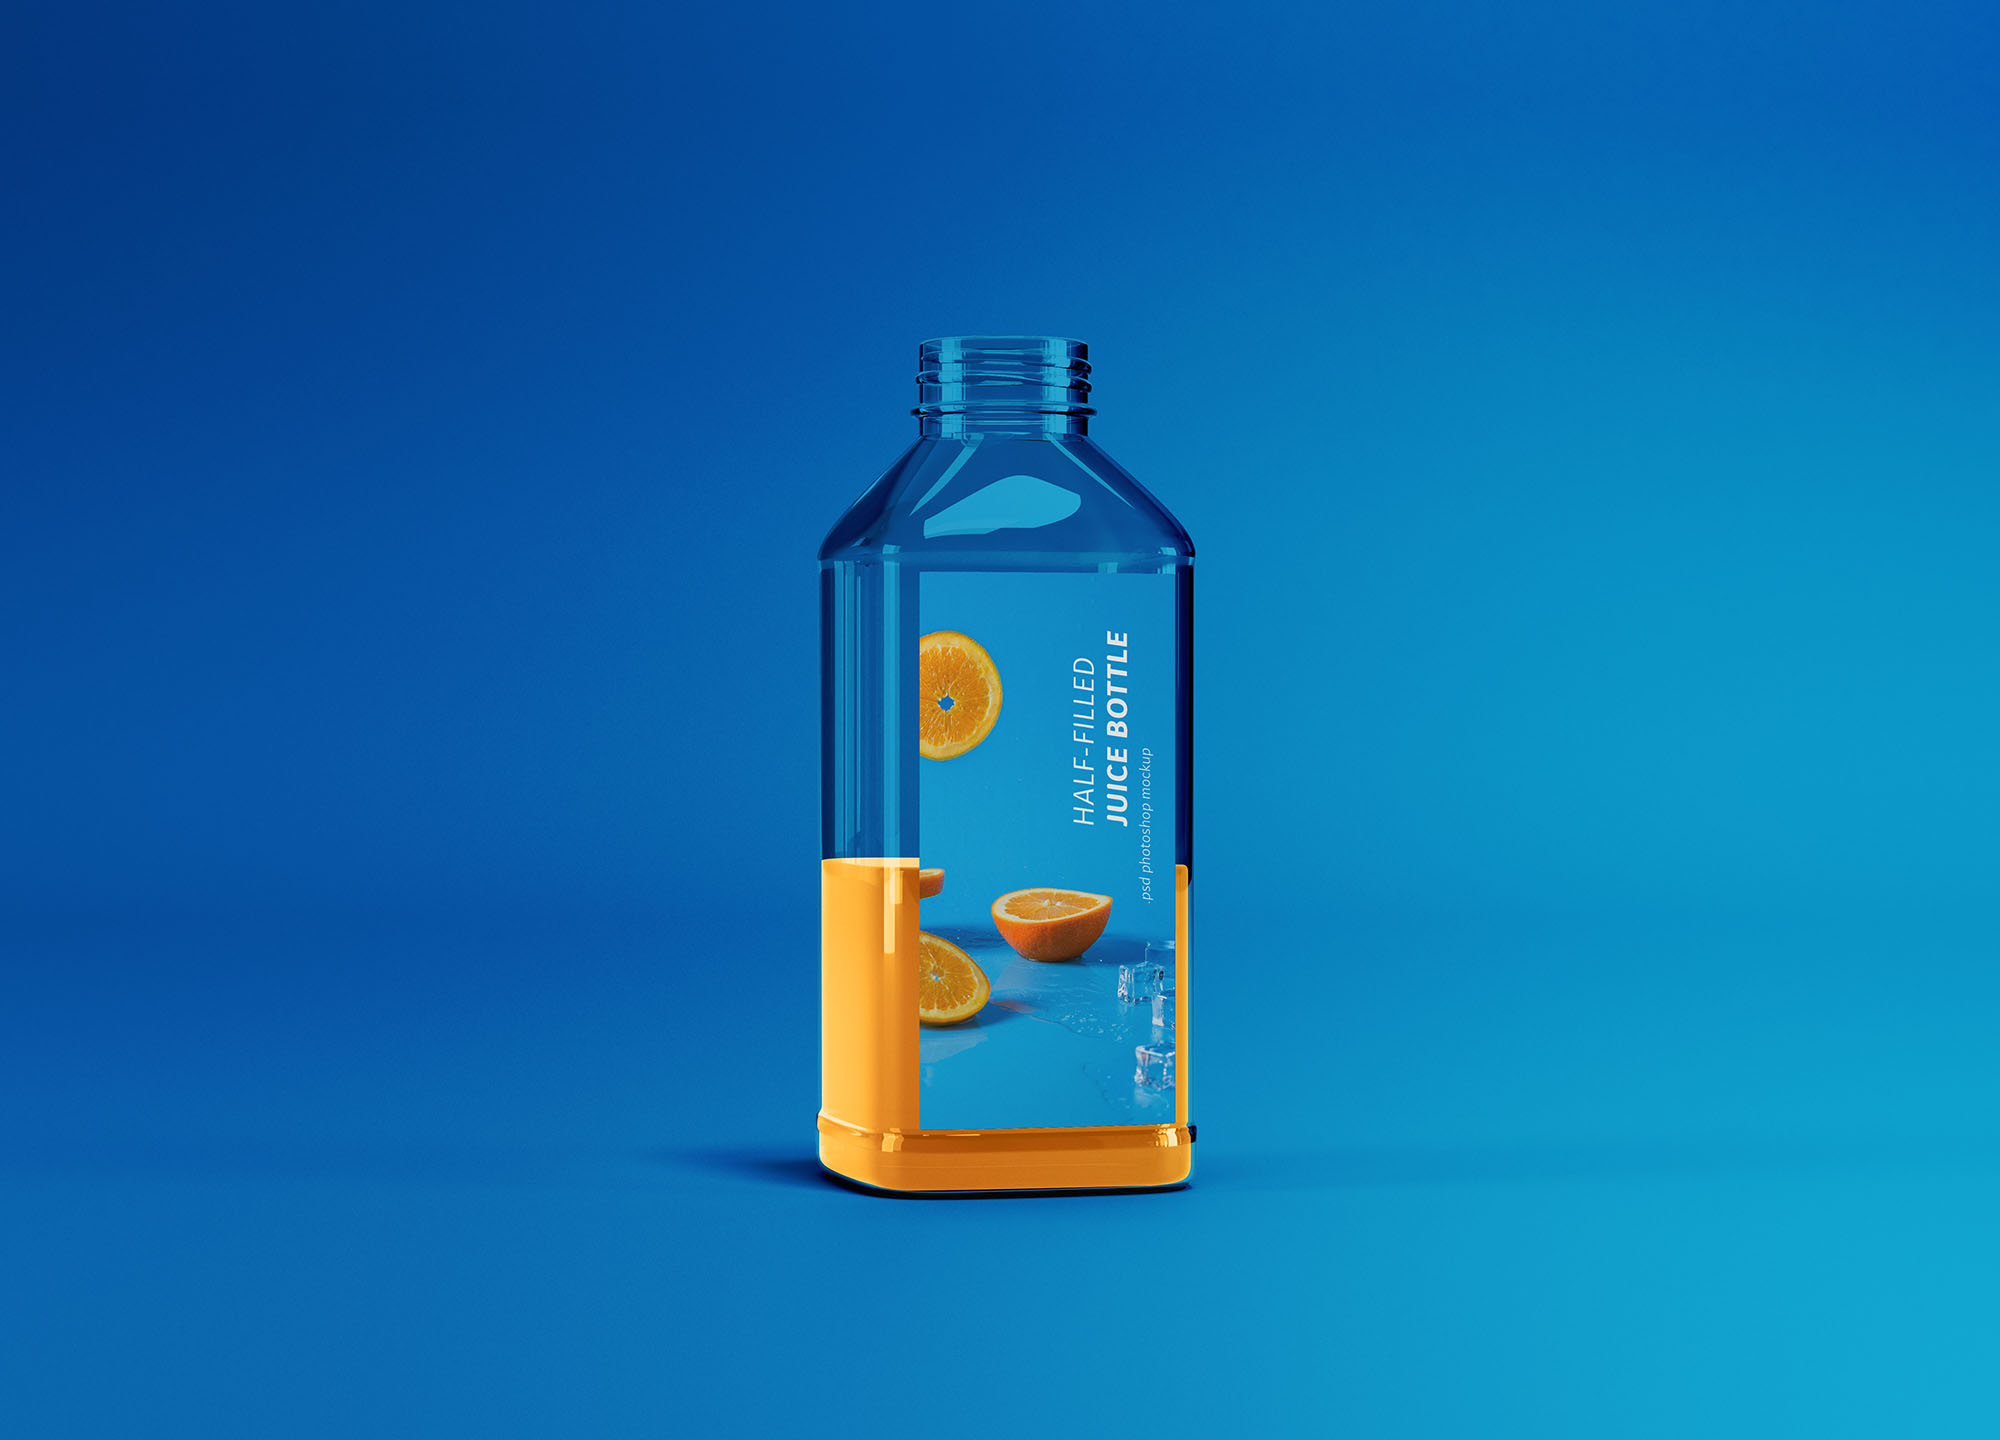 半罐透明塑料果汁瓶外观设计展示样机 Half-filled